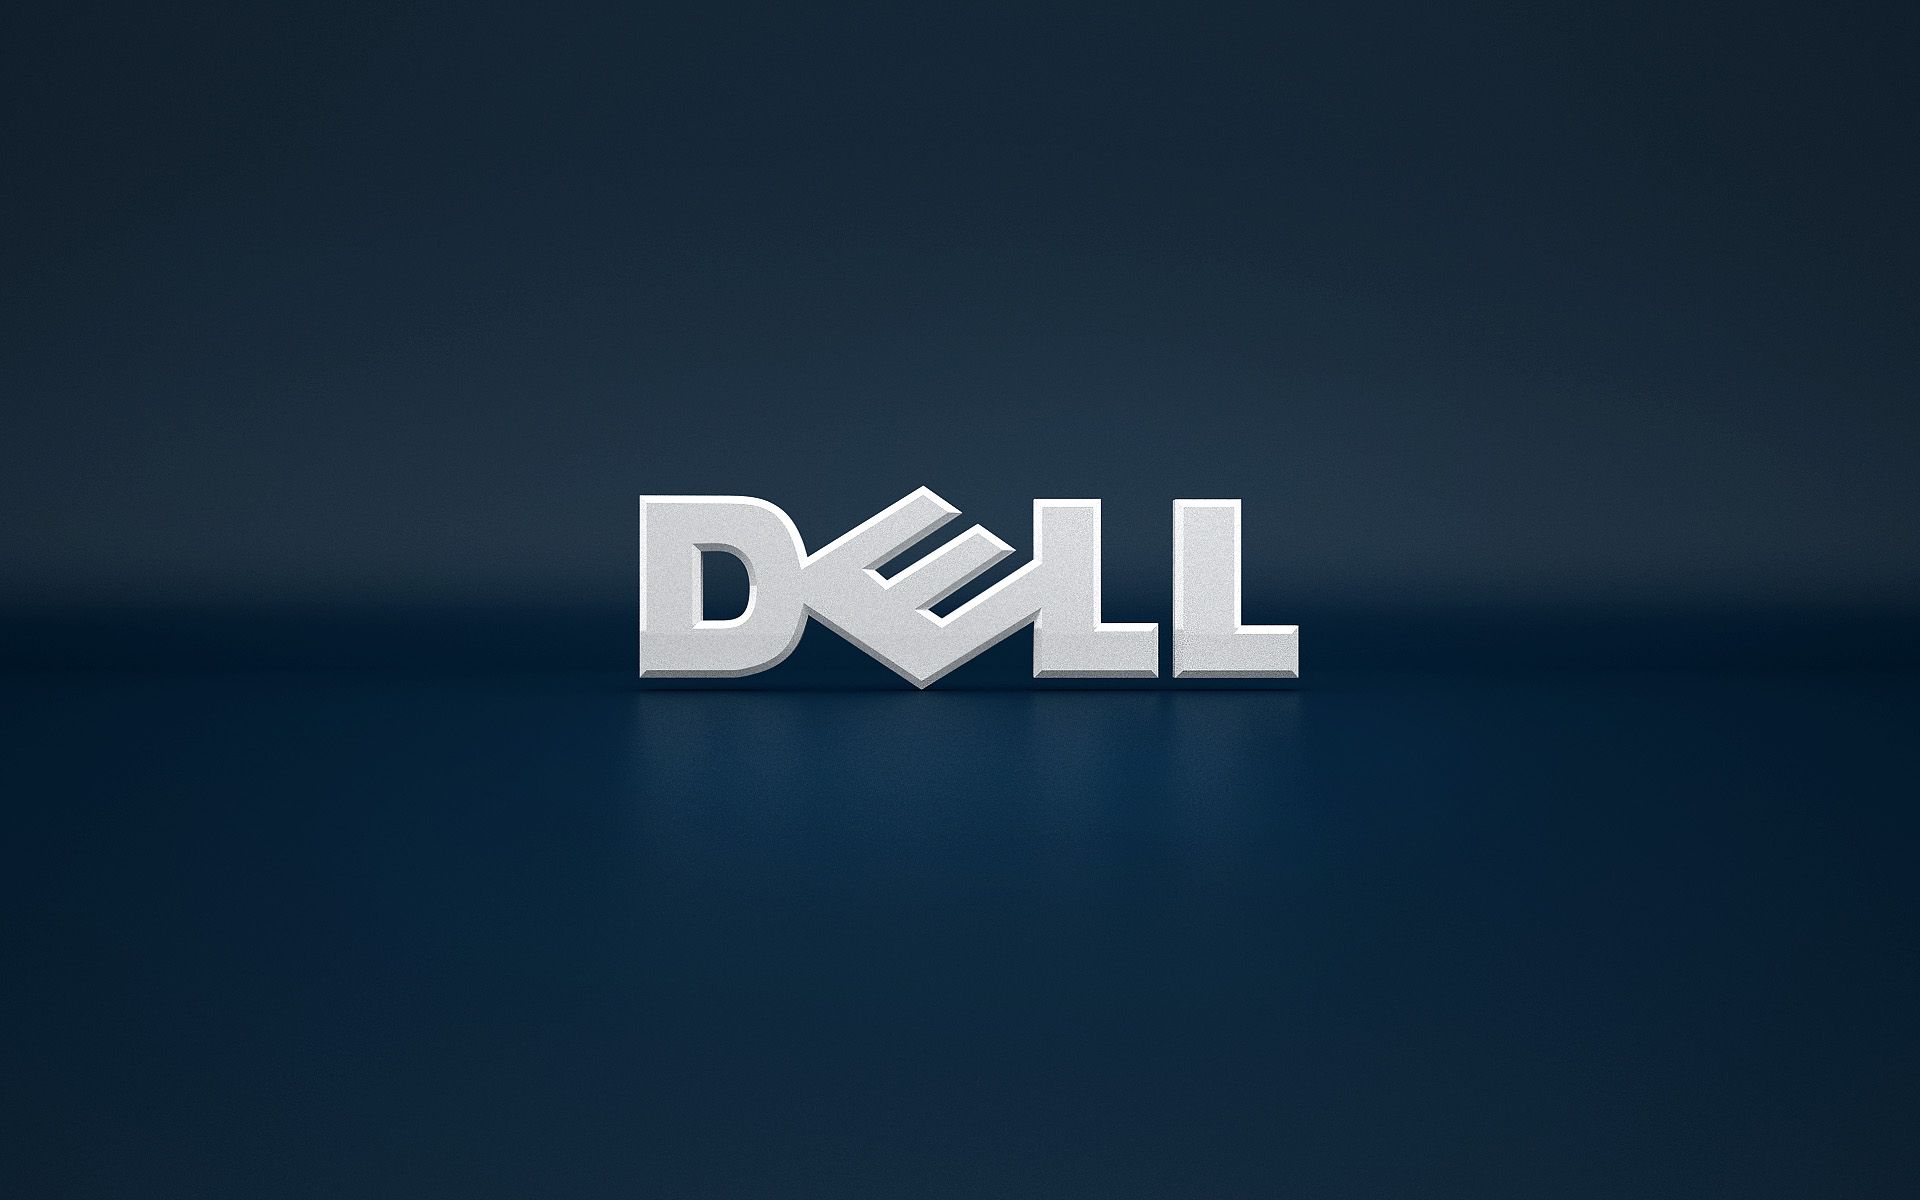 Bạn yêu thích những hình nền độc đáo, đẹp mắt và đầy sắc màu? Hãy đến với chúng tôi để khám phá bộ gallery hình nền Dell HD của chúng tôi. Với đa dạng sở thích và phong cách, chắc chắn bạn sẽ tìm được hình nền ưng ý cho chiếc laptop Dell của mình.